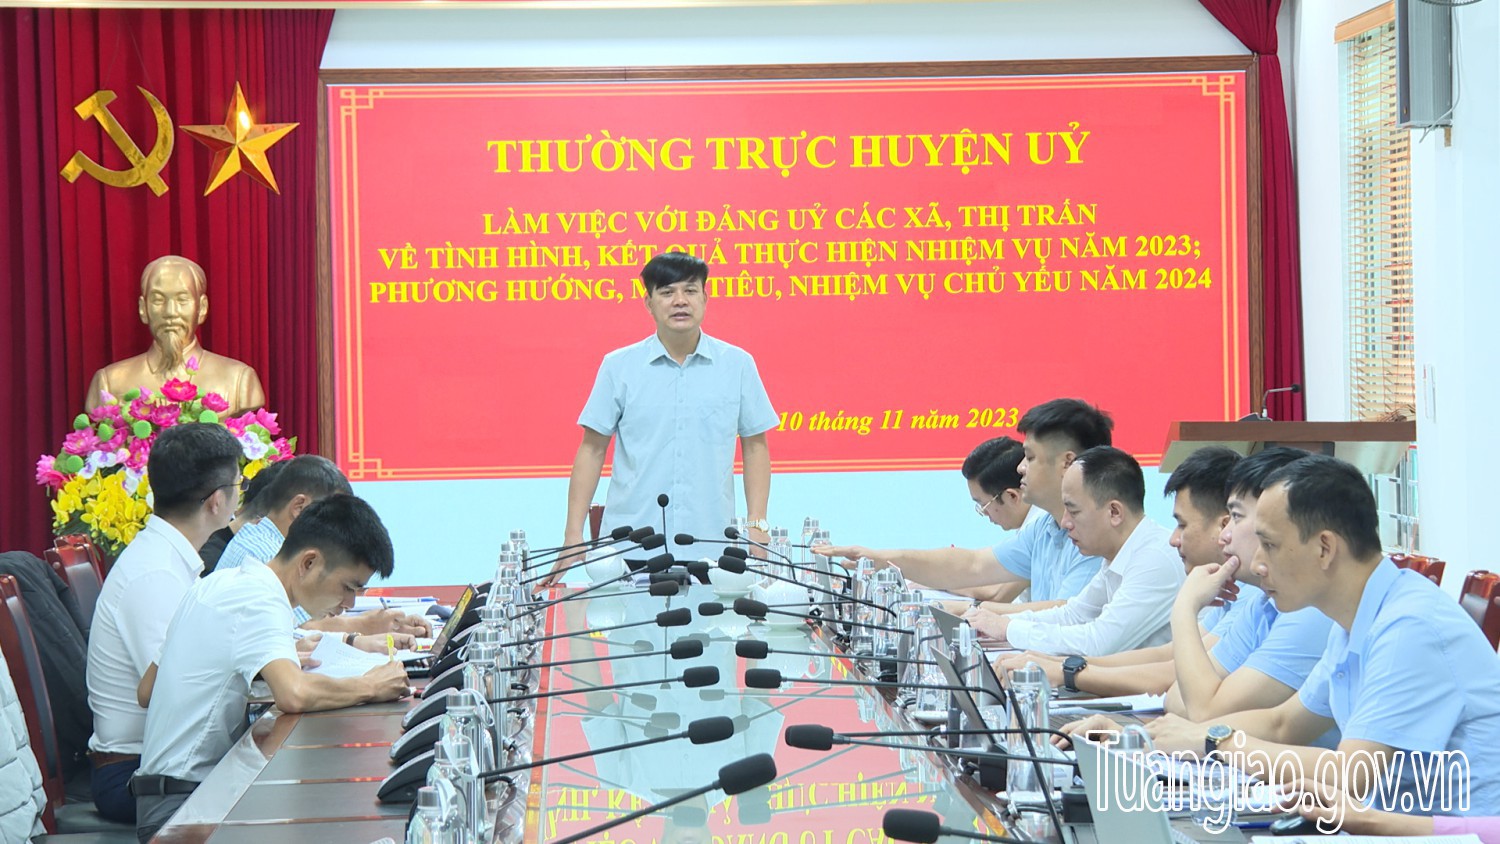 Thường trực Huyện ủy làm việc với Đảng ủy xã Mường Thín về tình hình, kết quả thực hiện nhiệm vụ năm 2023